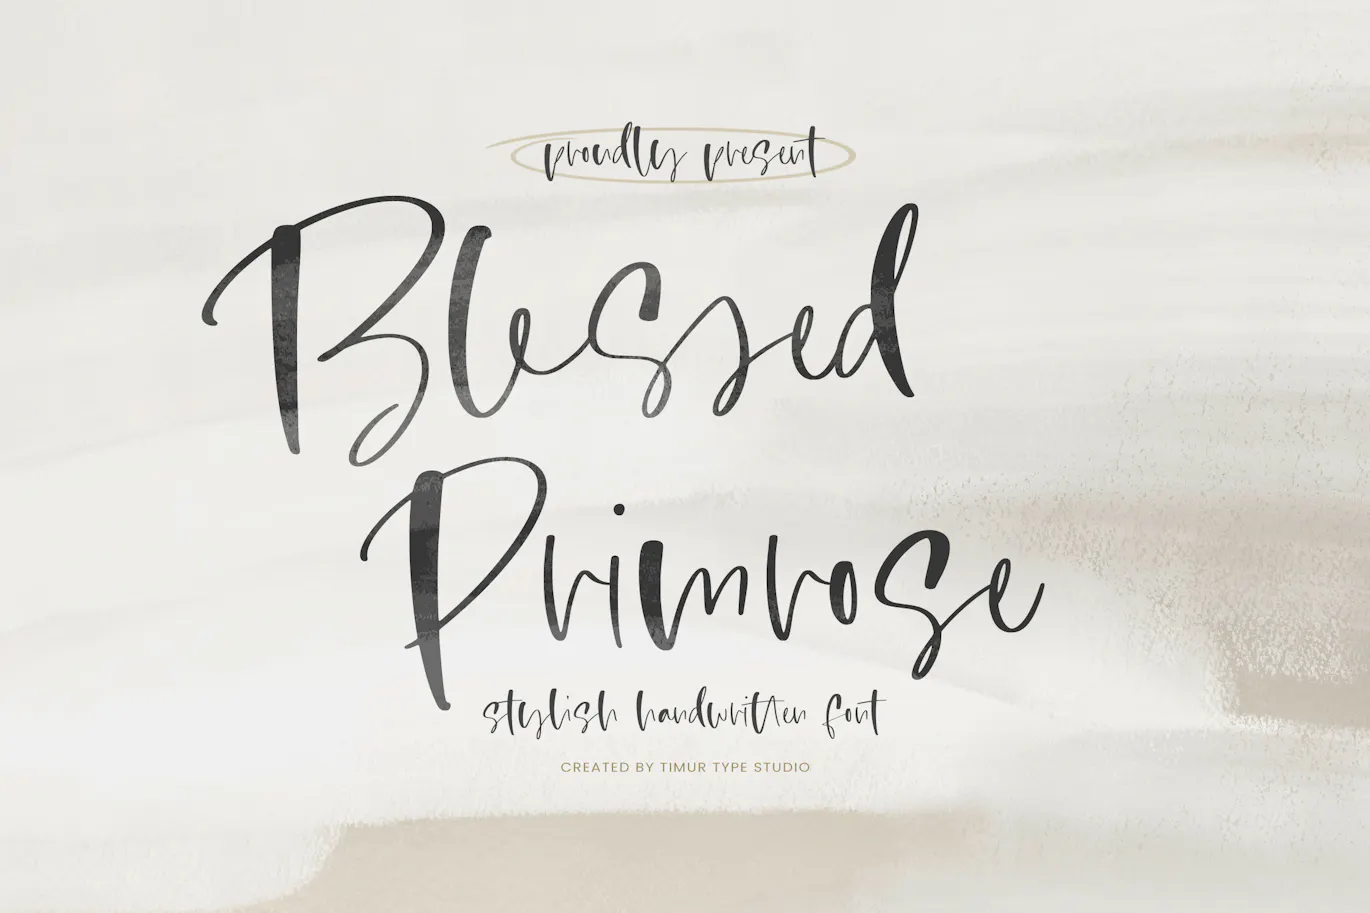 时尚精致优雅的英文手写字体 - Blessed Primrose - Stylish Handwritten Font TT 设计字体 第7张